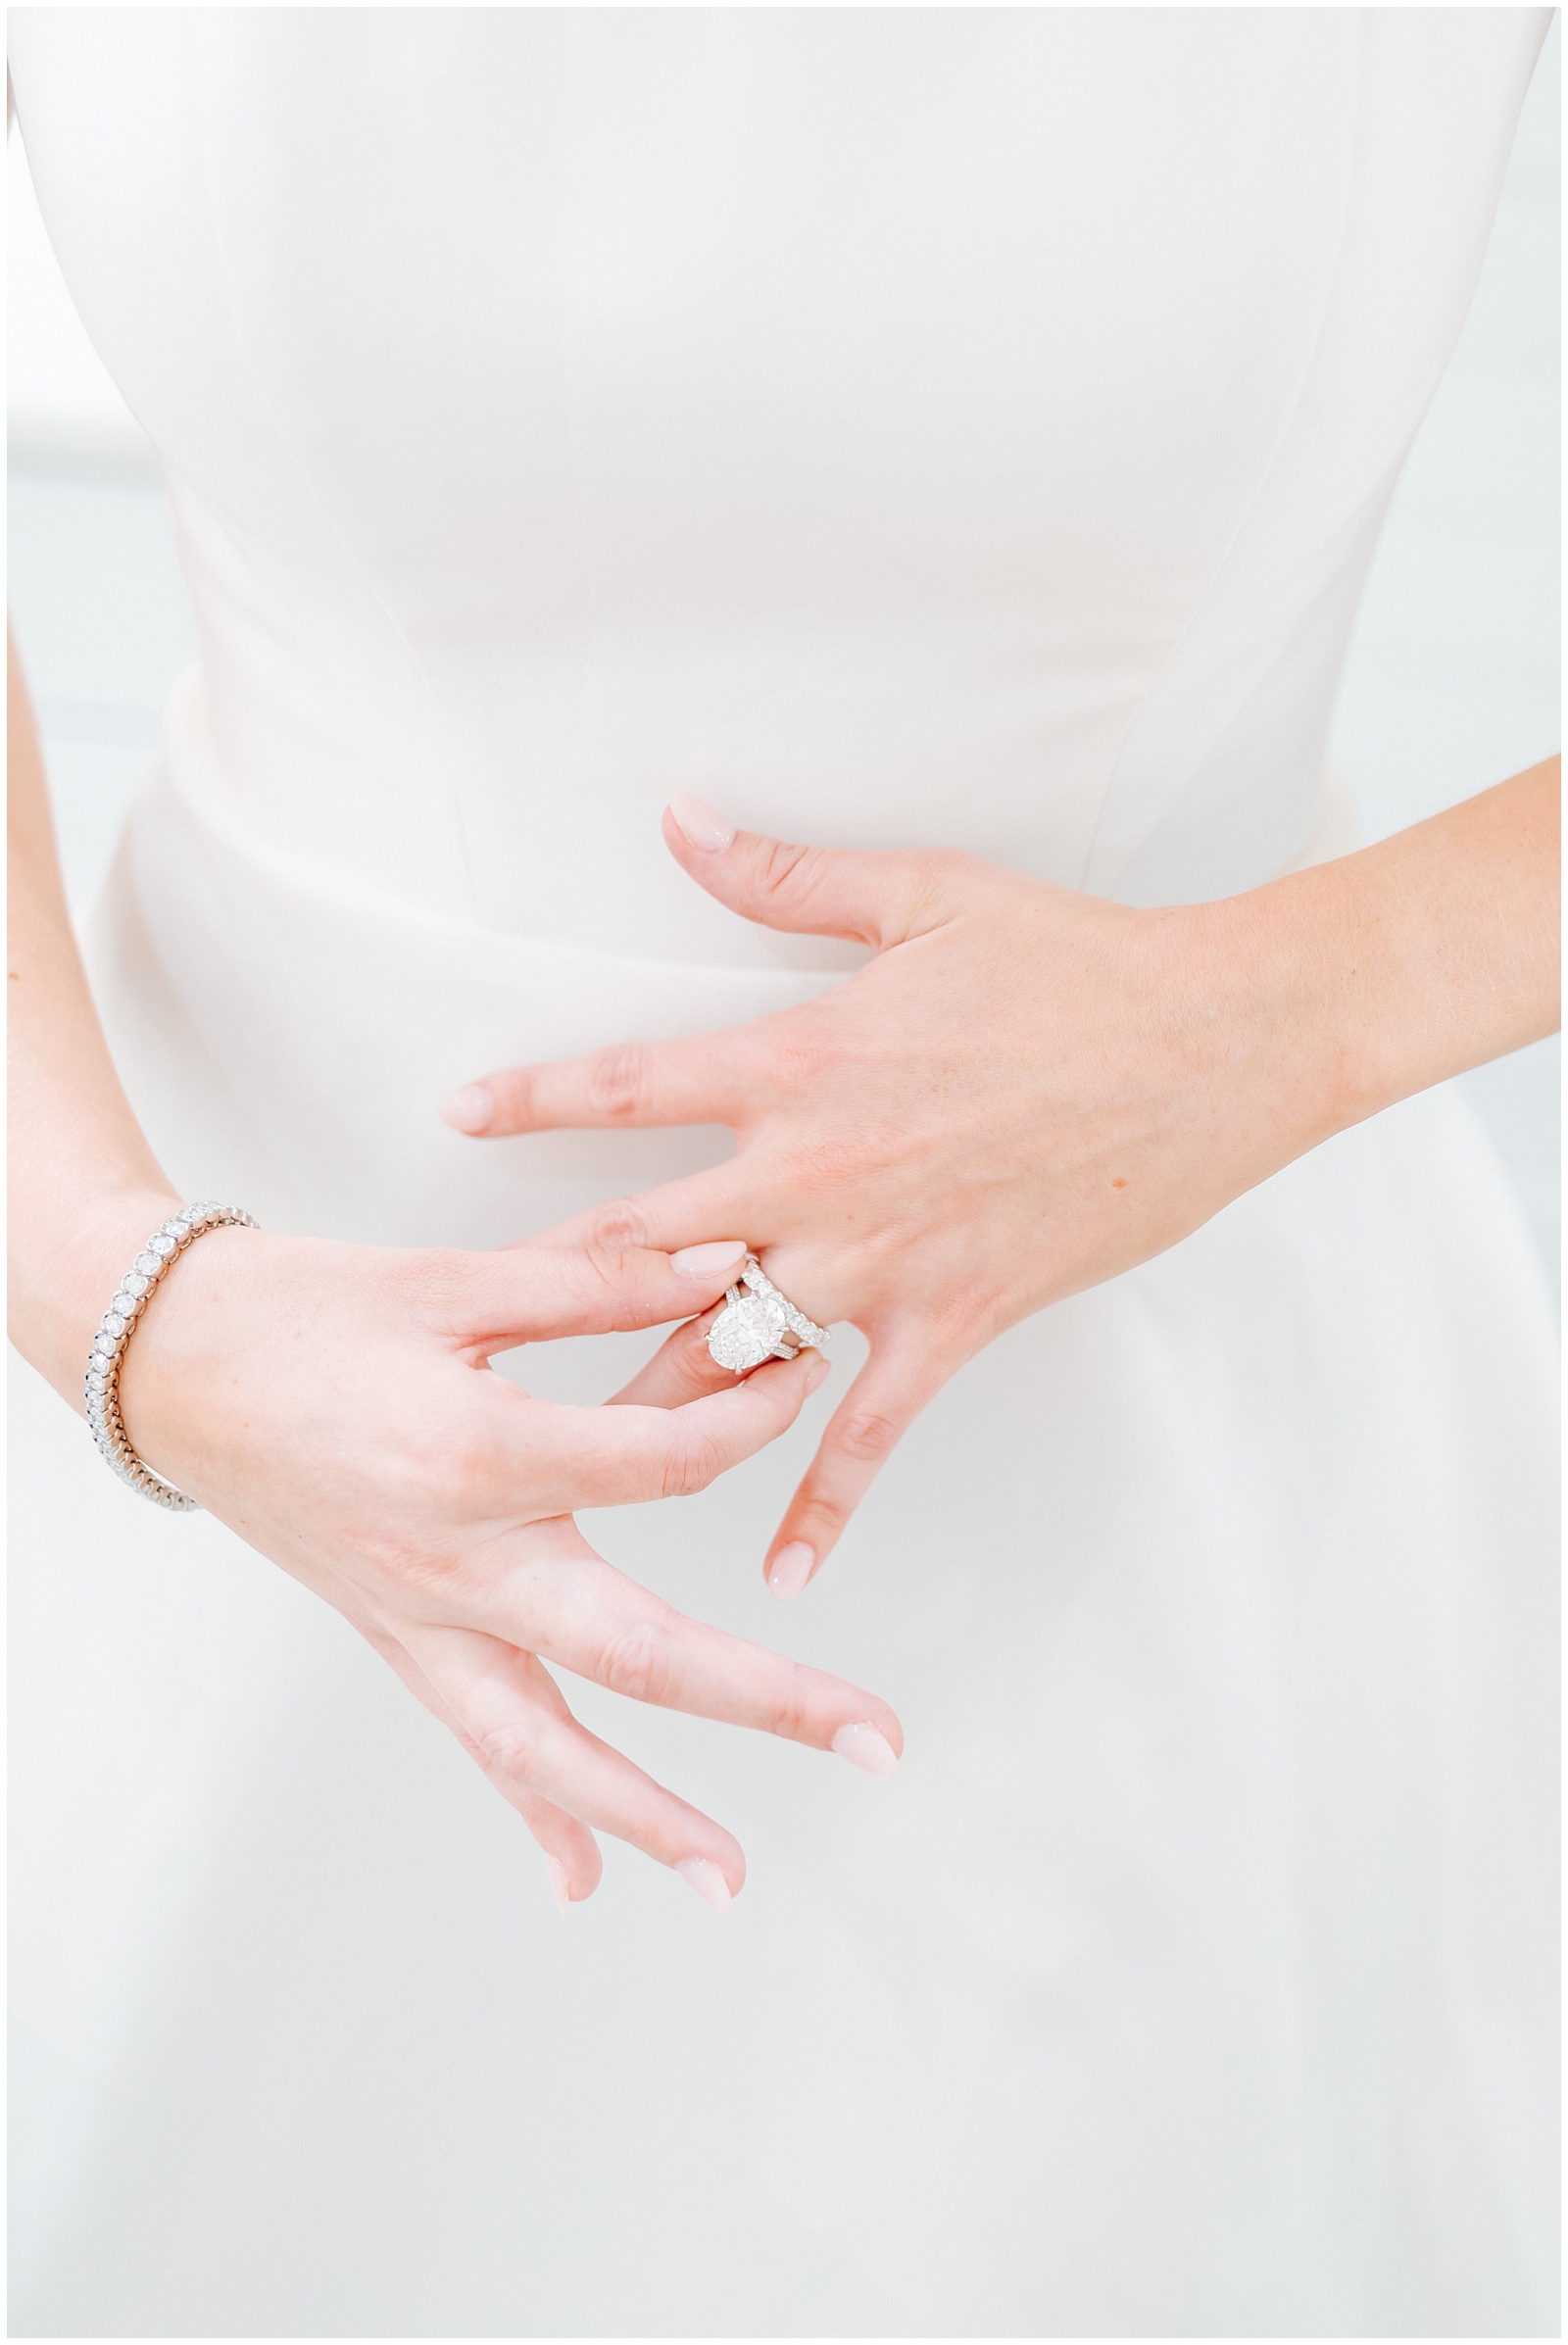 Detail of Bride putting on 10 carat engagement ring at Classic Elegant Florida Wedding